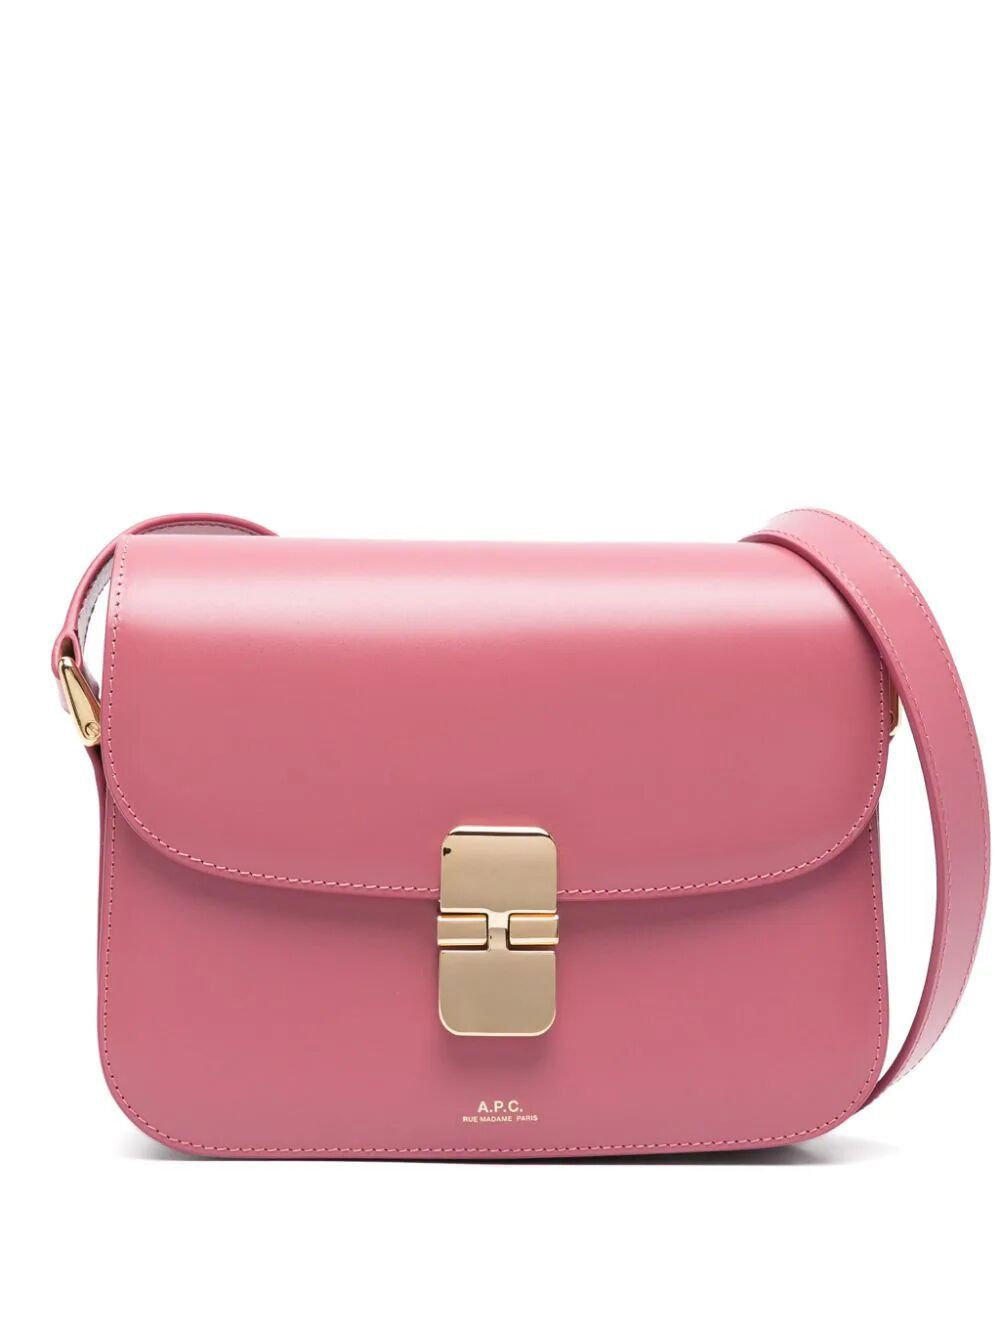 A.P.C. GRACE SHOULDER Handbag